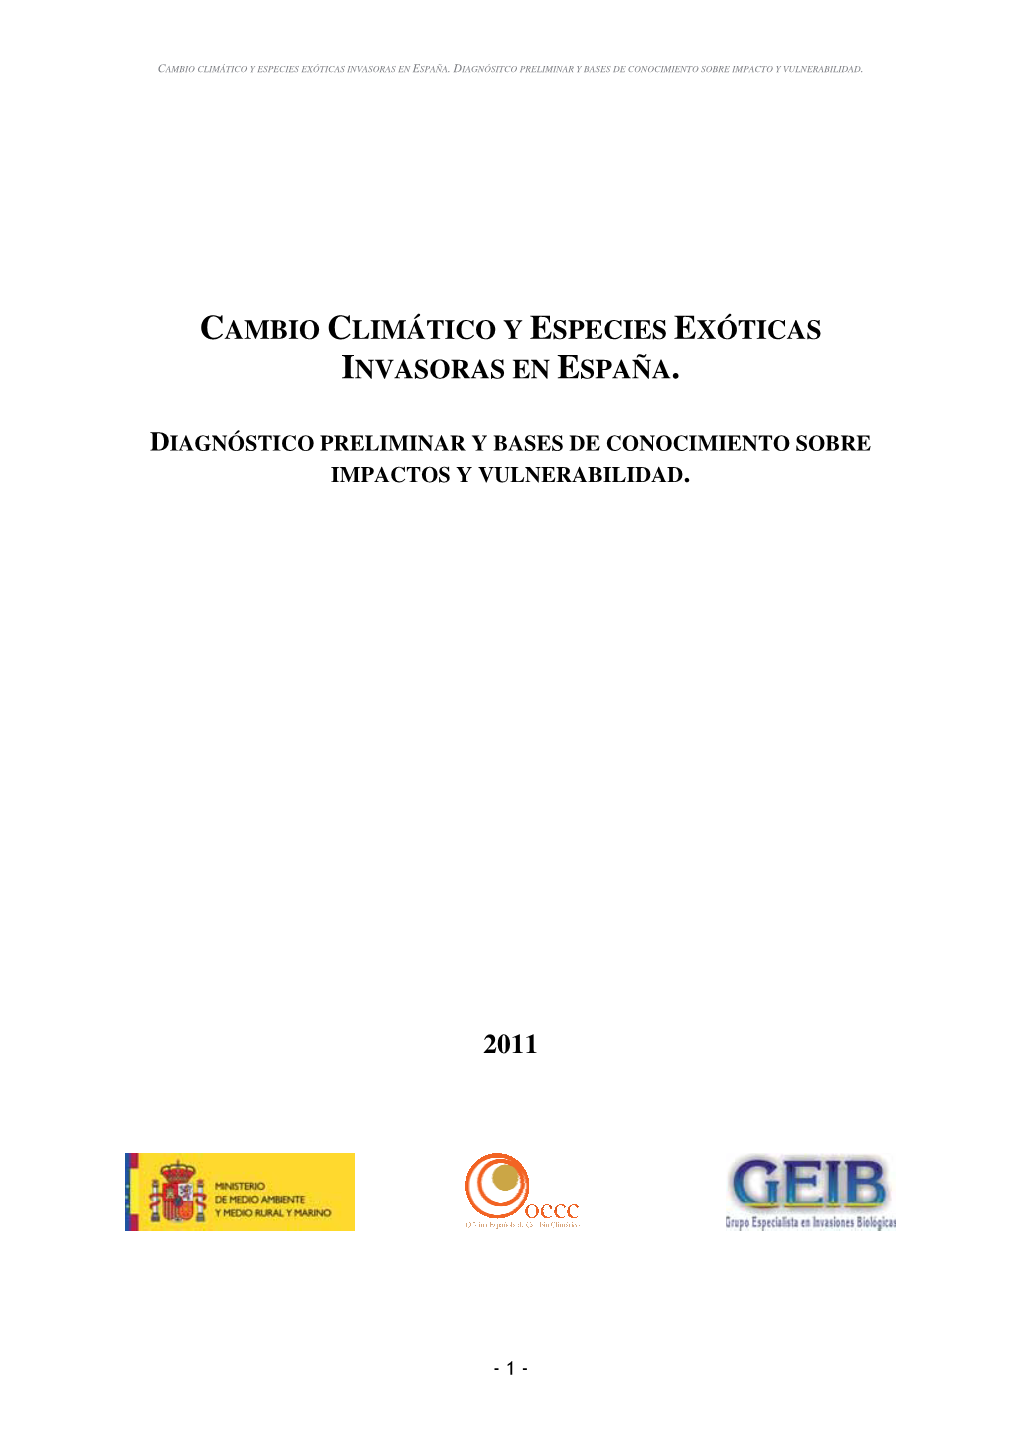 Cambio Climático Y Especies Exóticas Invasoras En España. 2011